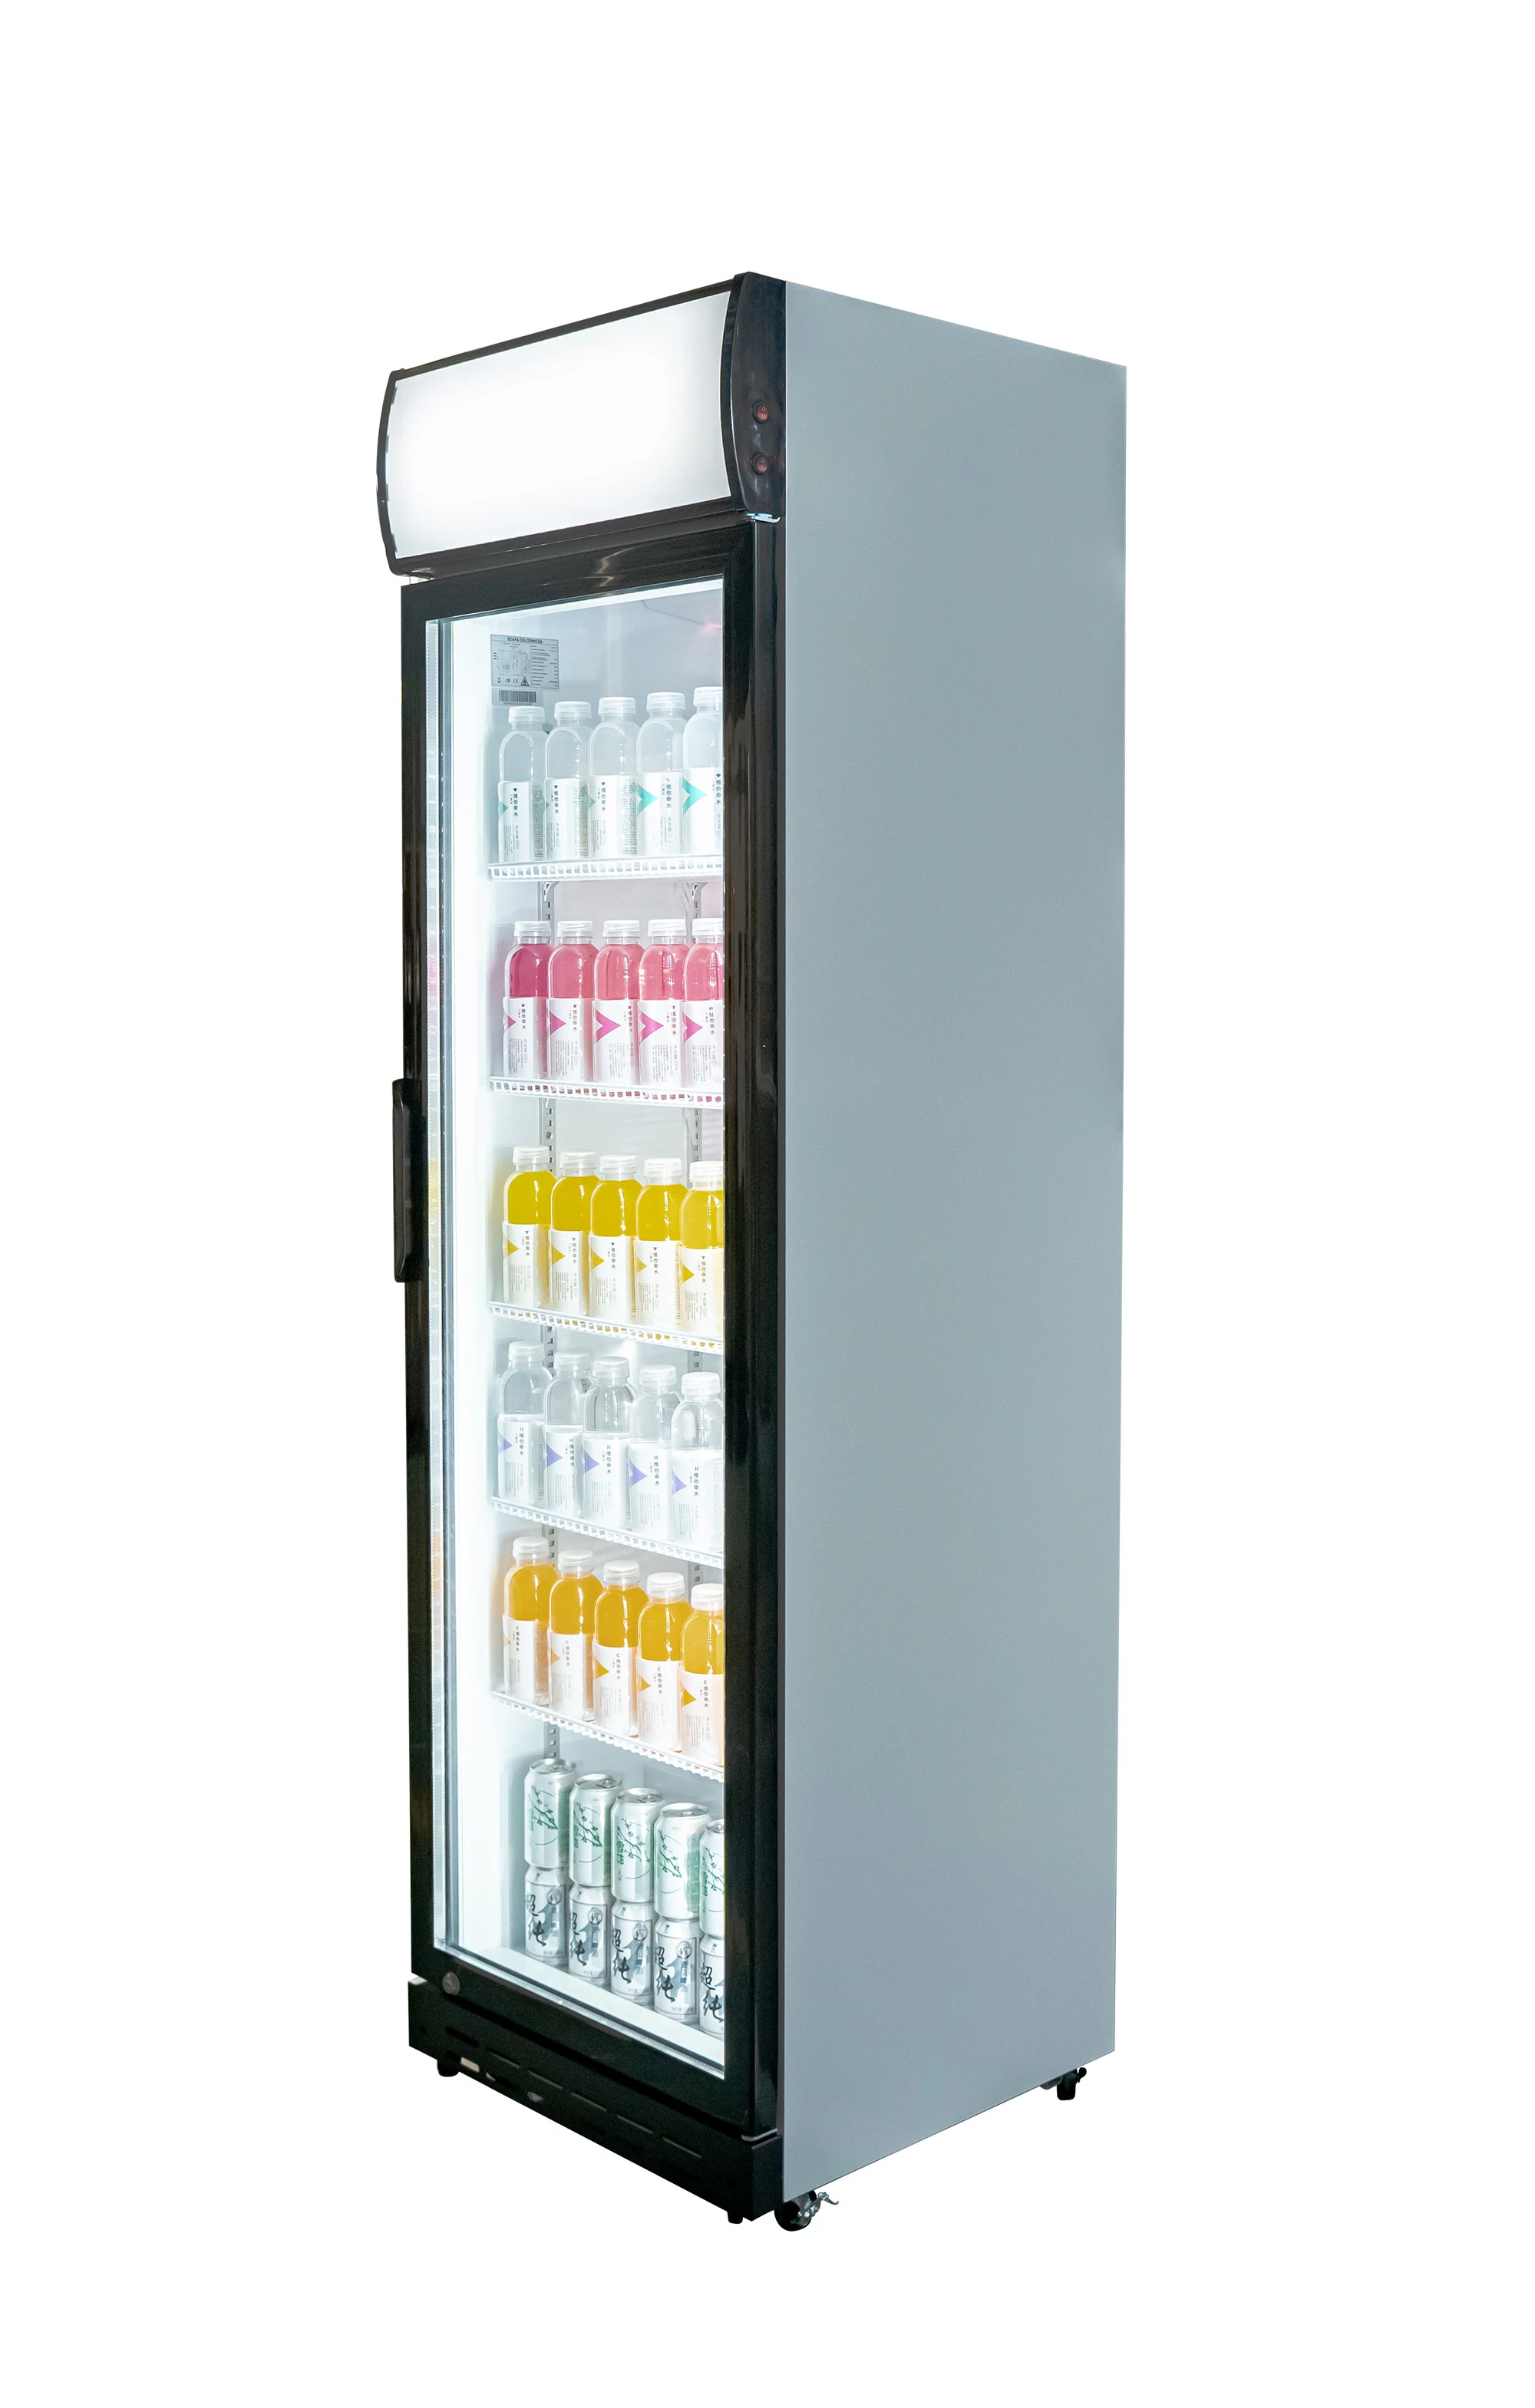 Upright Showcase Cooler Bakery Showcase Display Refrigerator